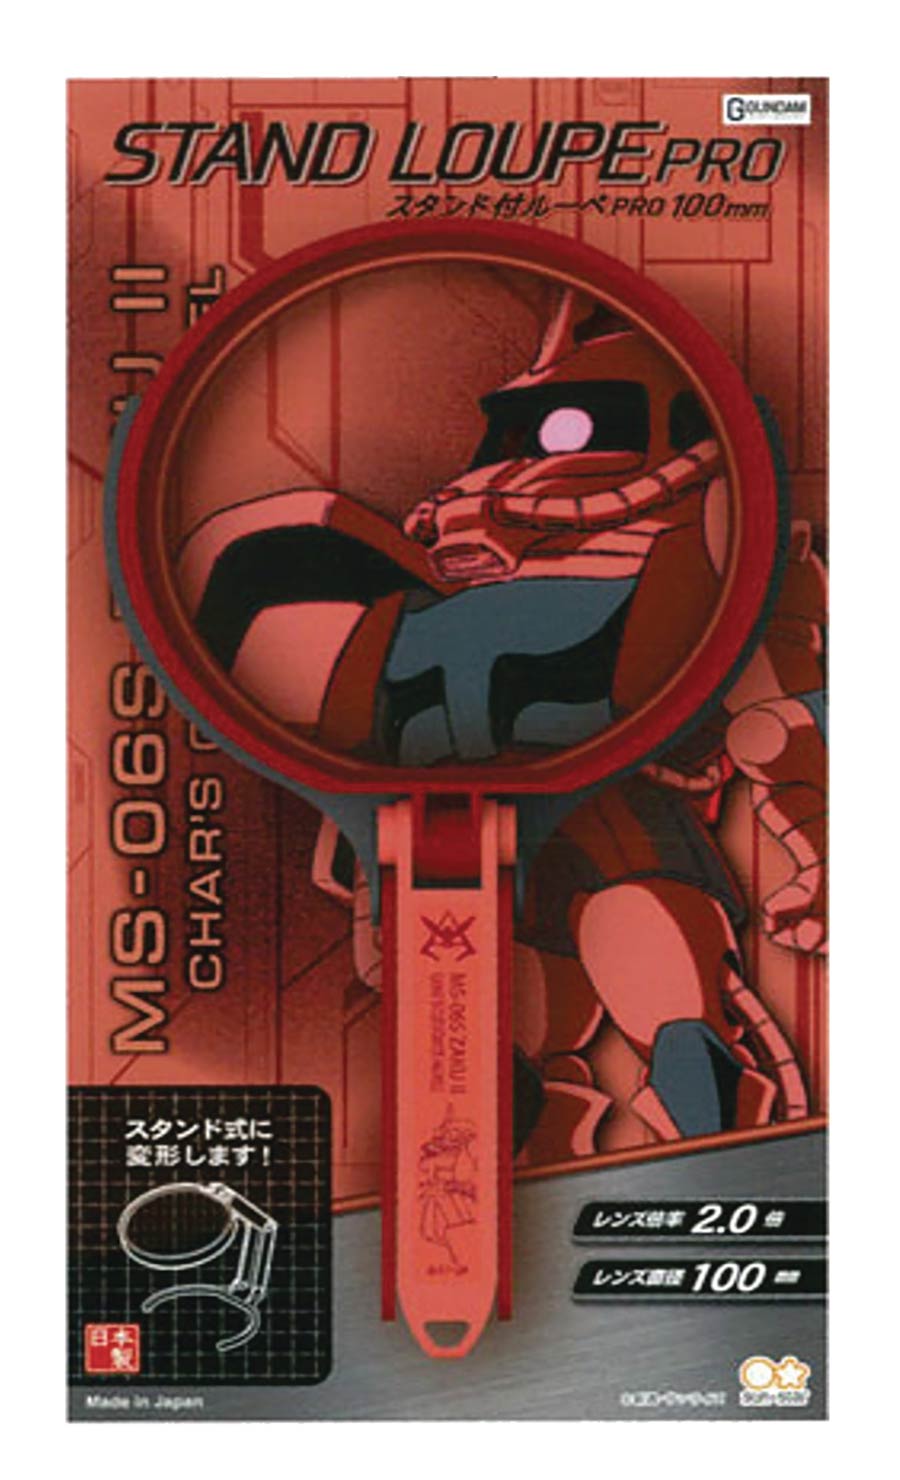 Gundam Stationary 7 Magnifier Pro With Stand - Chars Zaku II